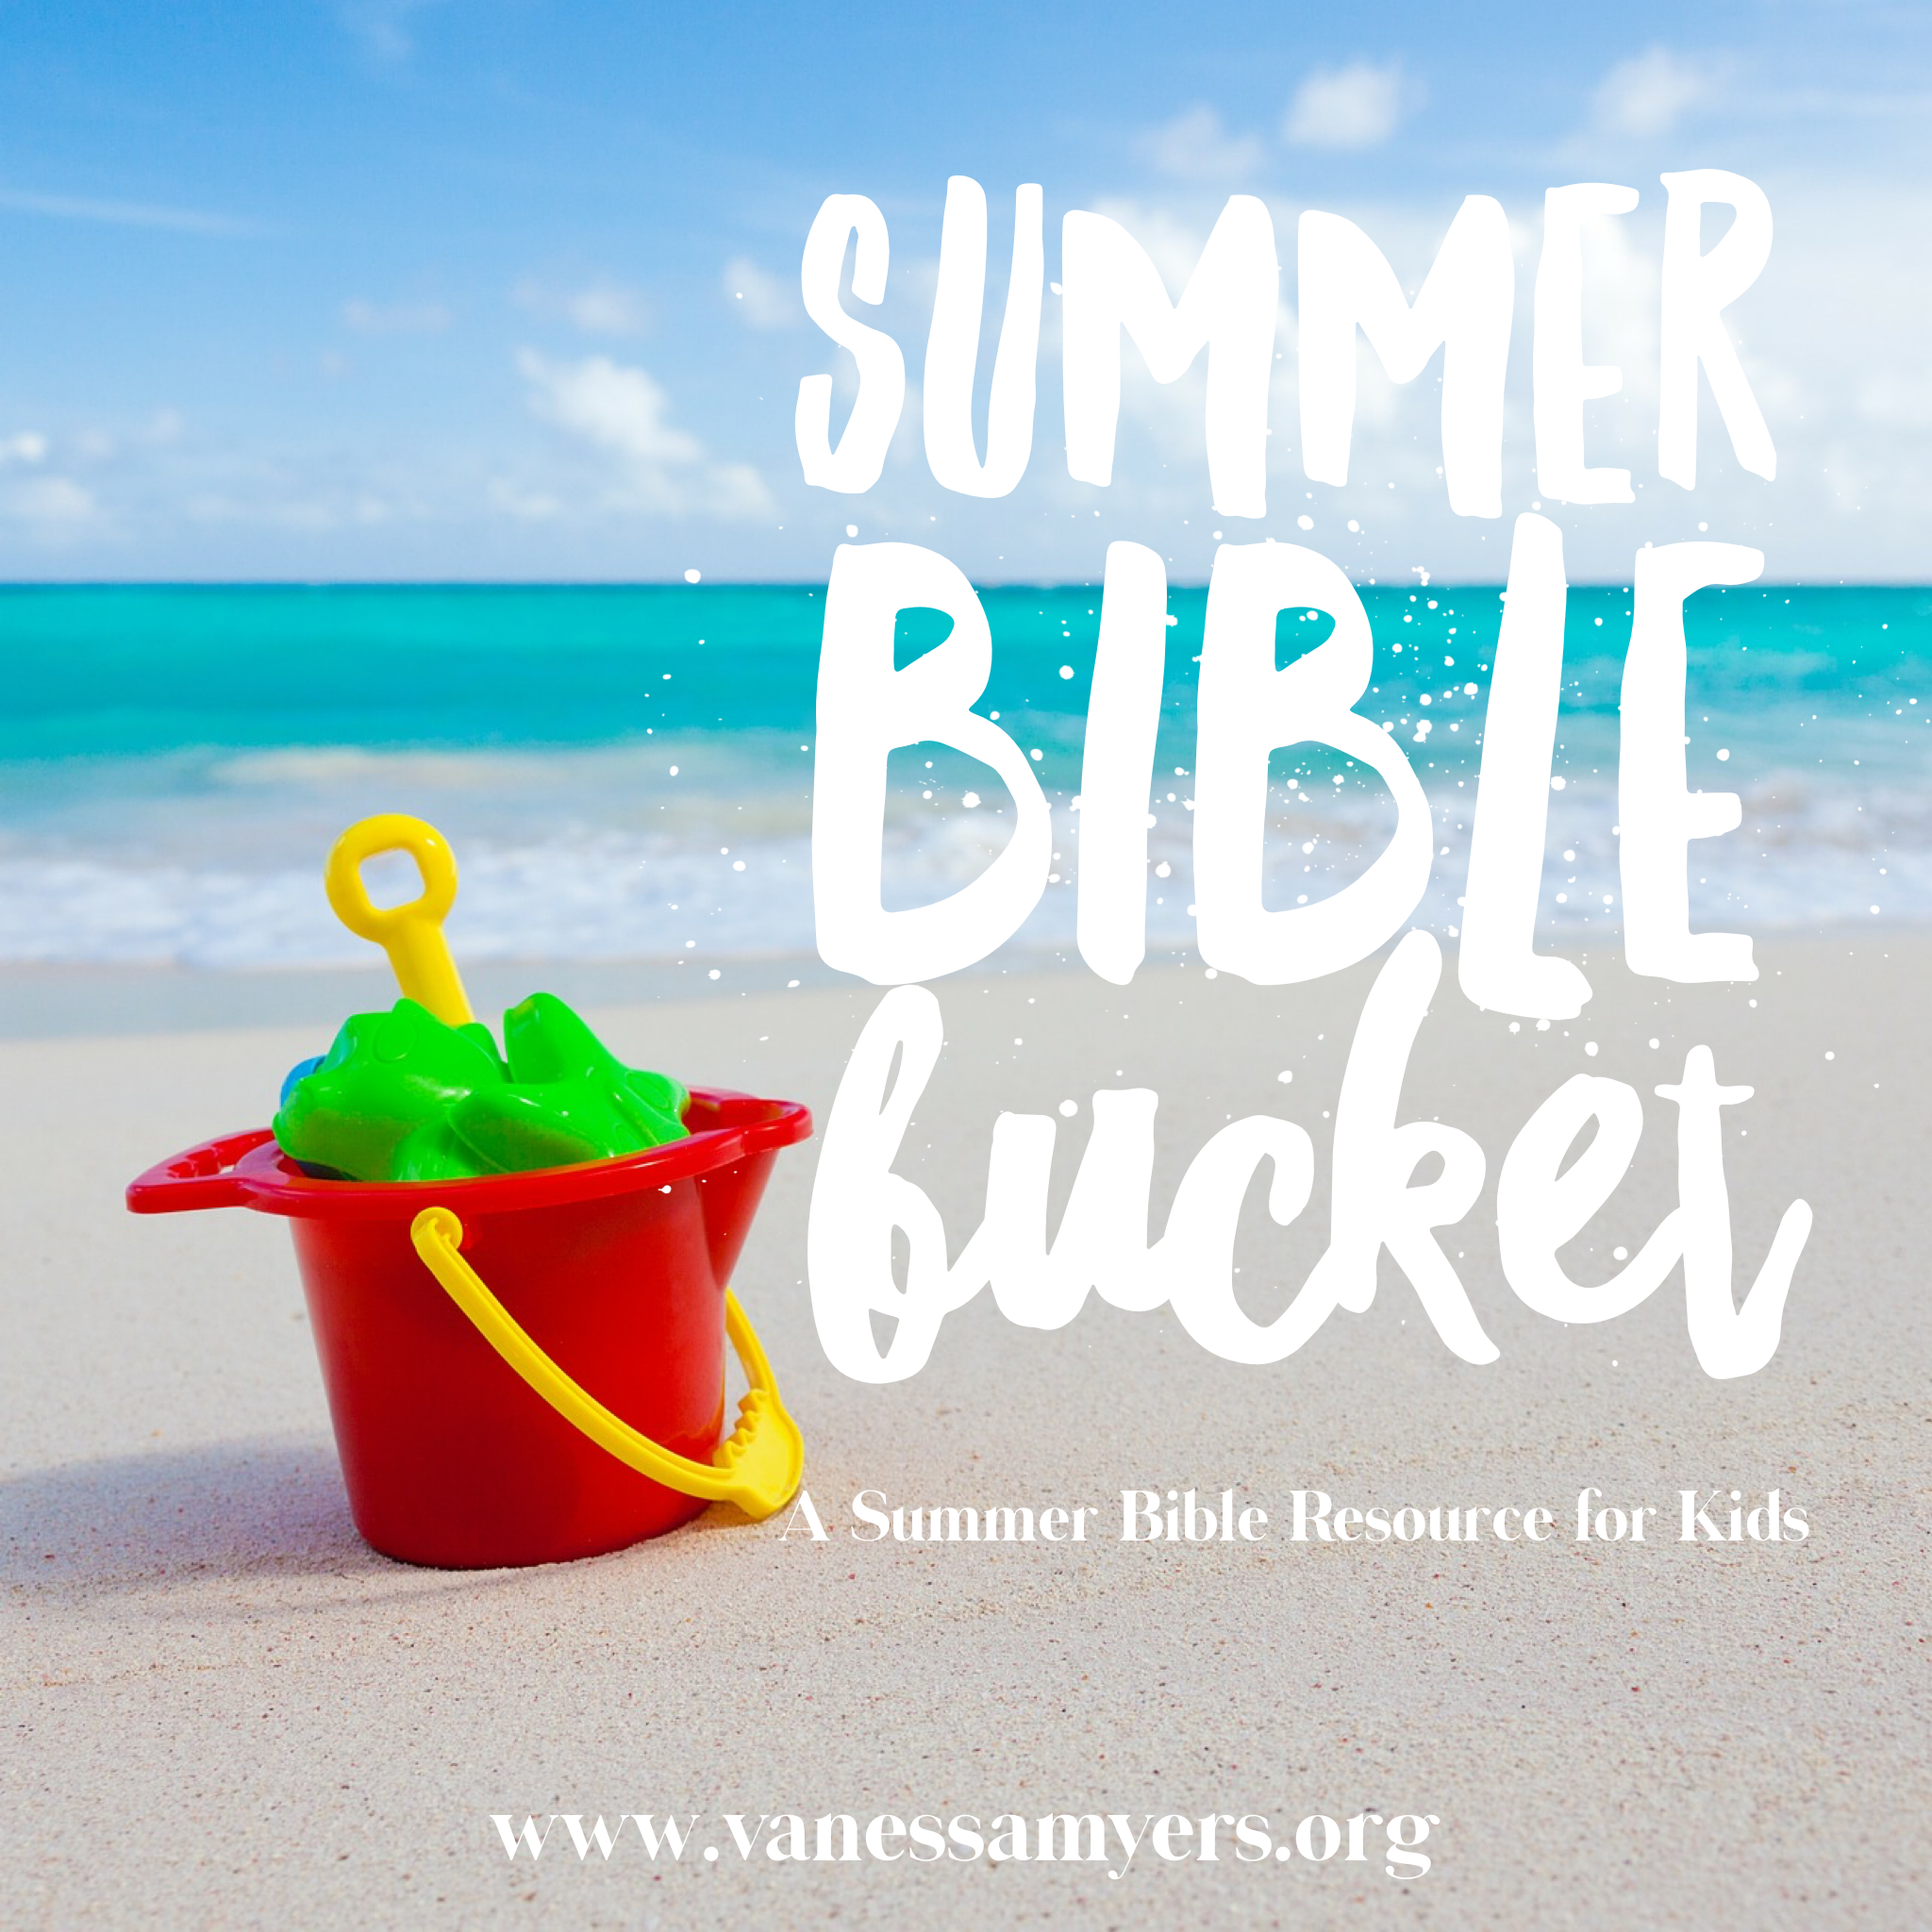 Summer Bible Bucket A Summer Bible Resource for Kids